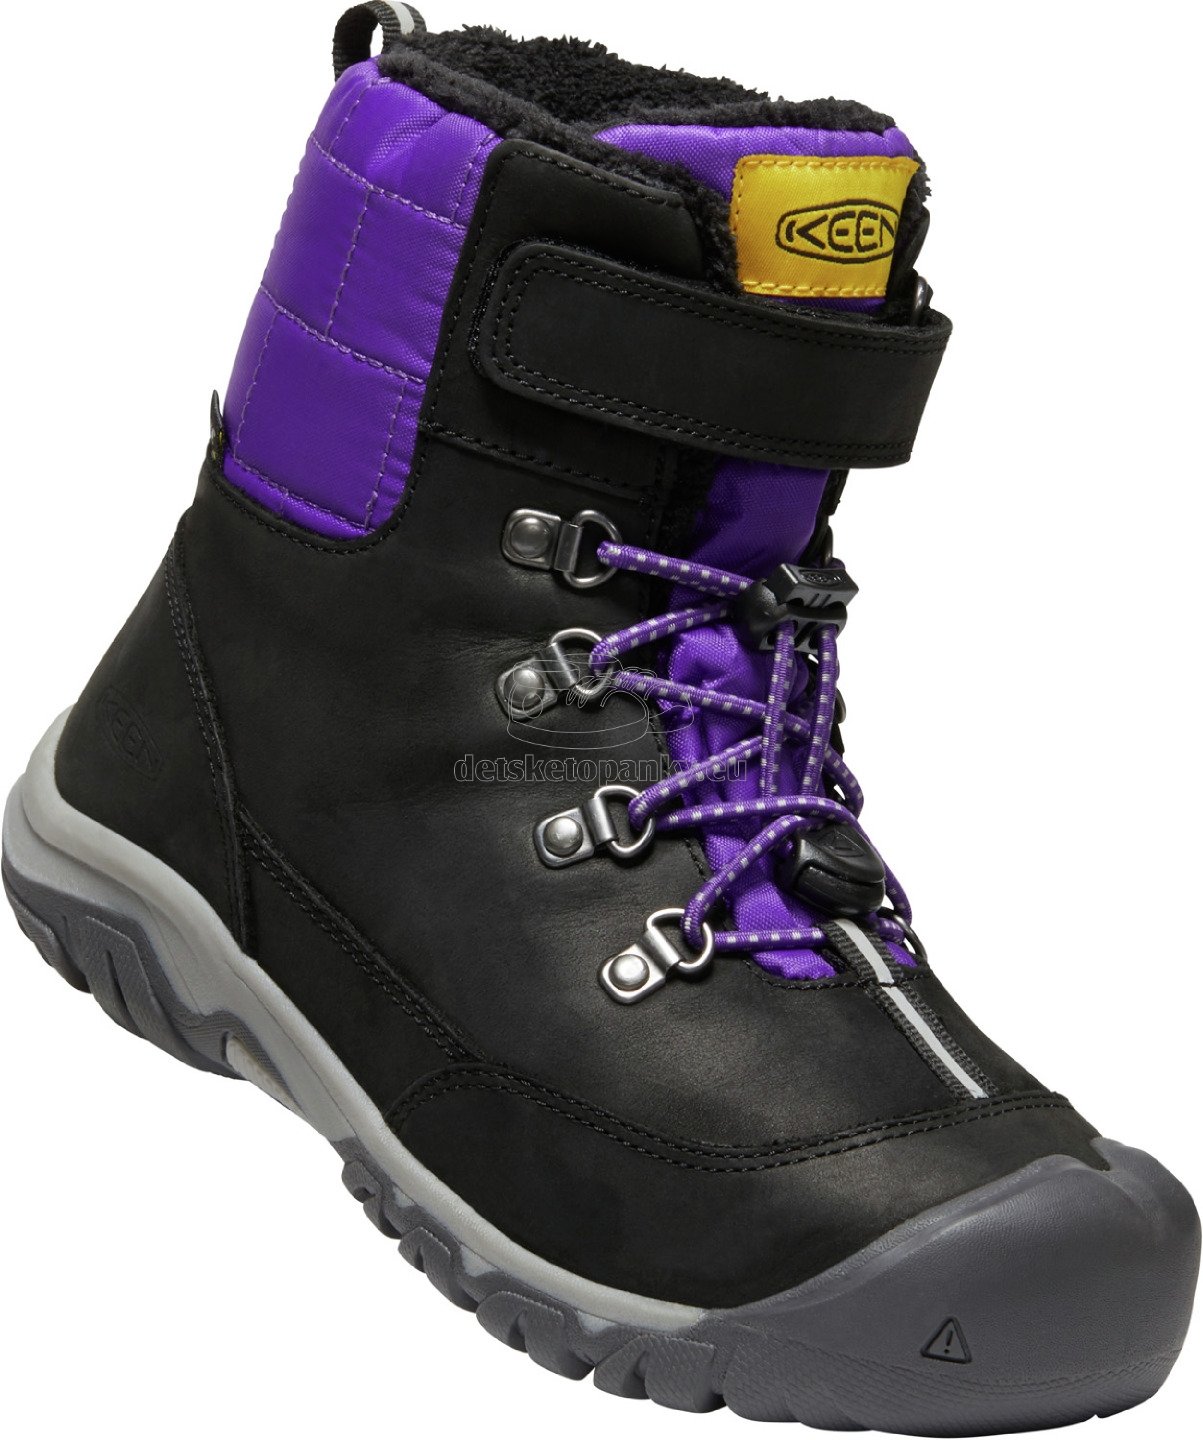 Detské zimné topánky Keen GRETA BOOT WP YOUTH black/purple